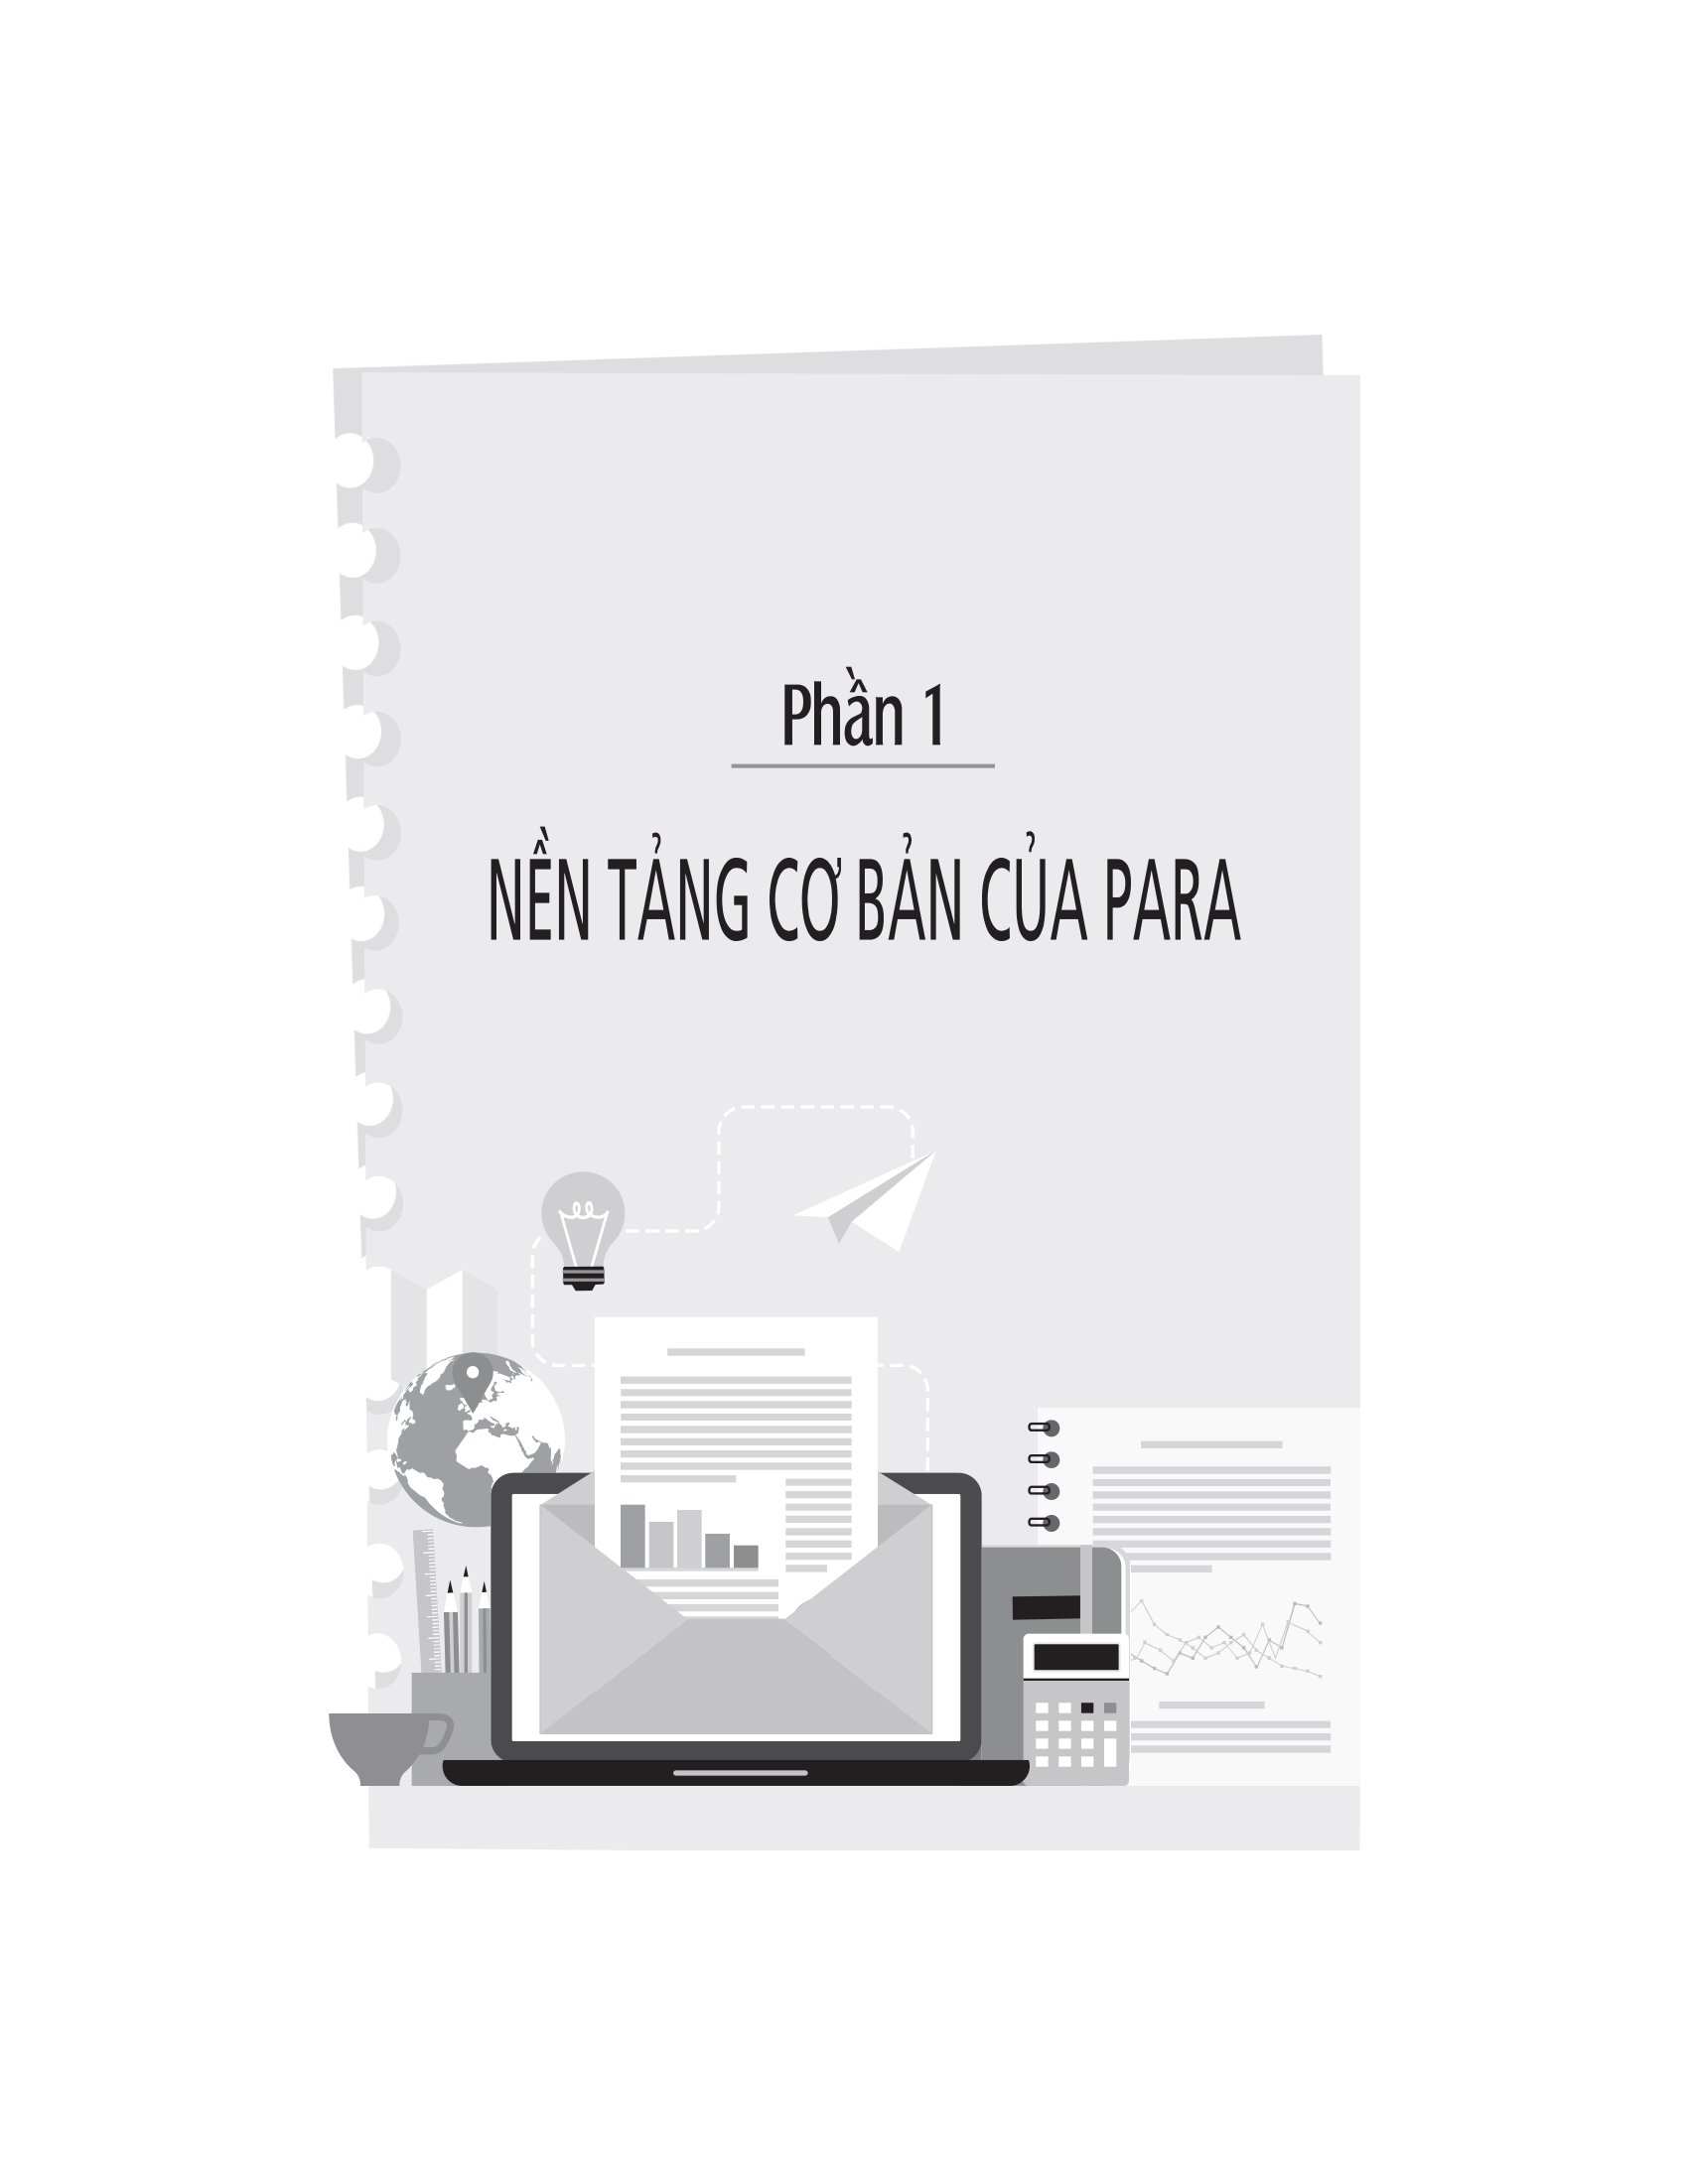 The PARA Method - Phương Pháp Tổ Chức Thông Tin Trong Công Việc - 1980